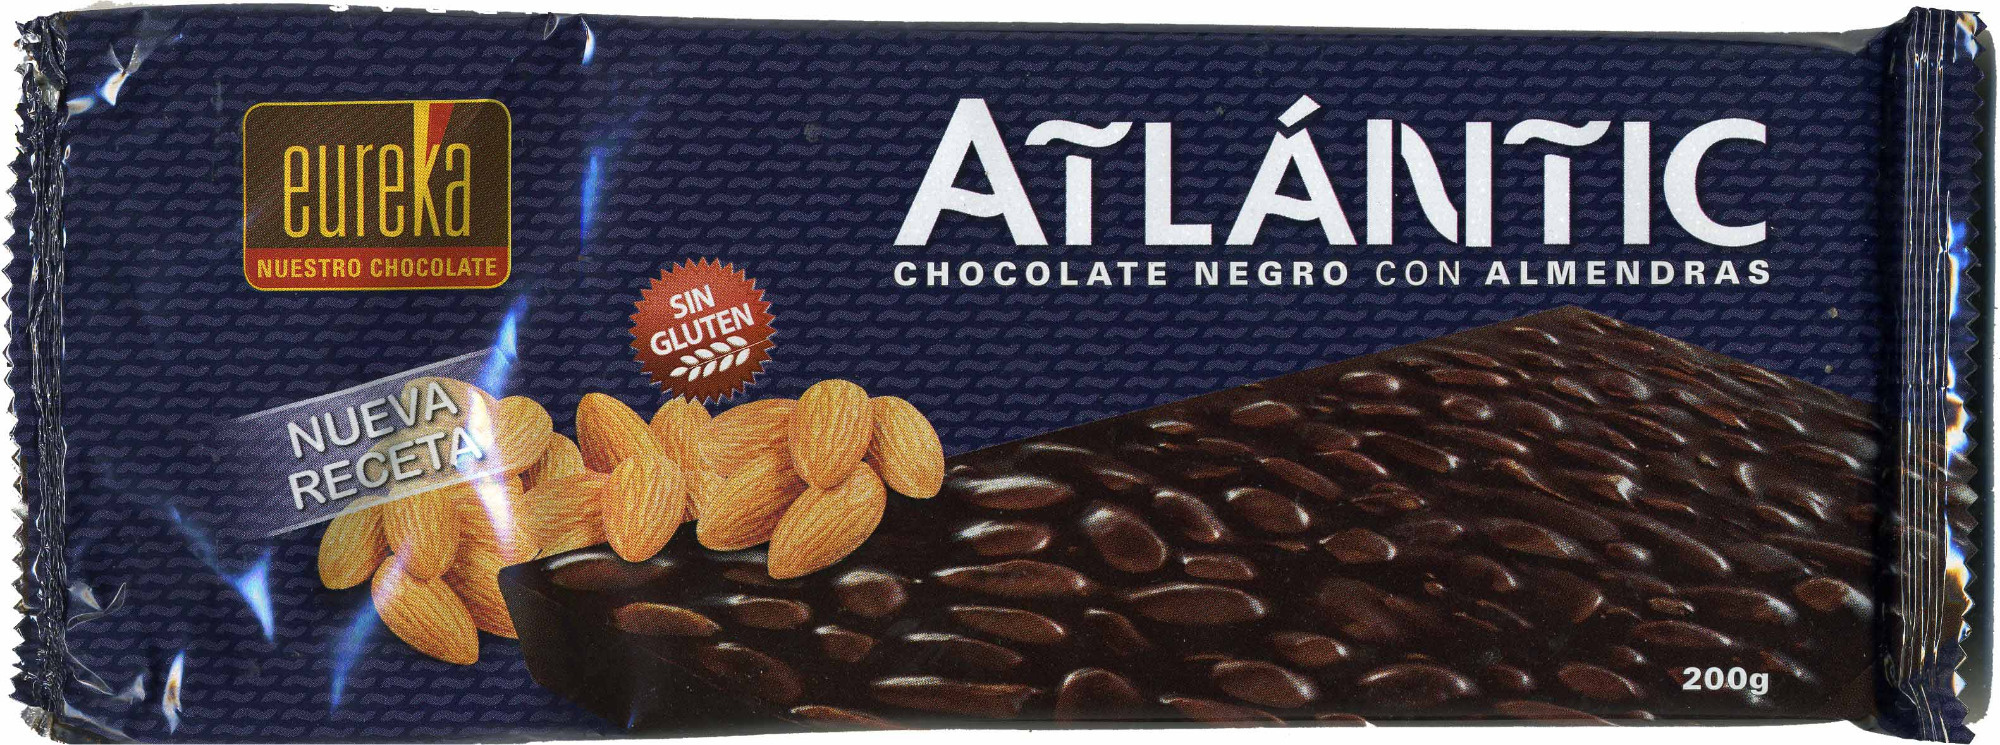 Atlantic seleccion chocolate negro con almemdras - Producto